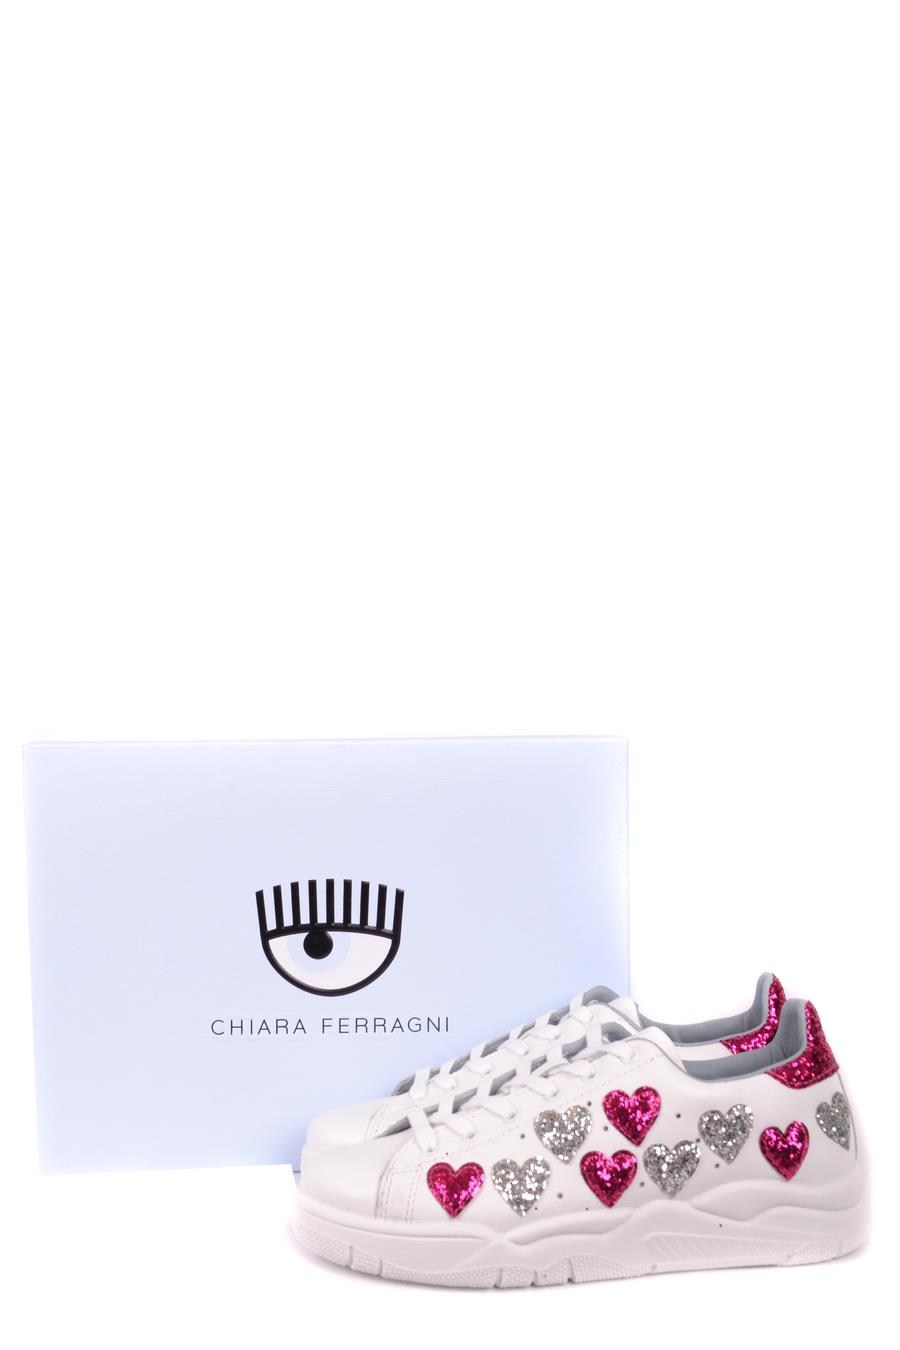 CHIARA FERRAGNI Sneakers | ViganoBoutique.com